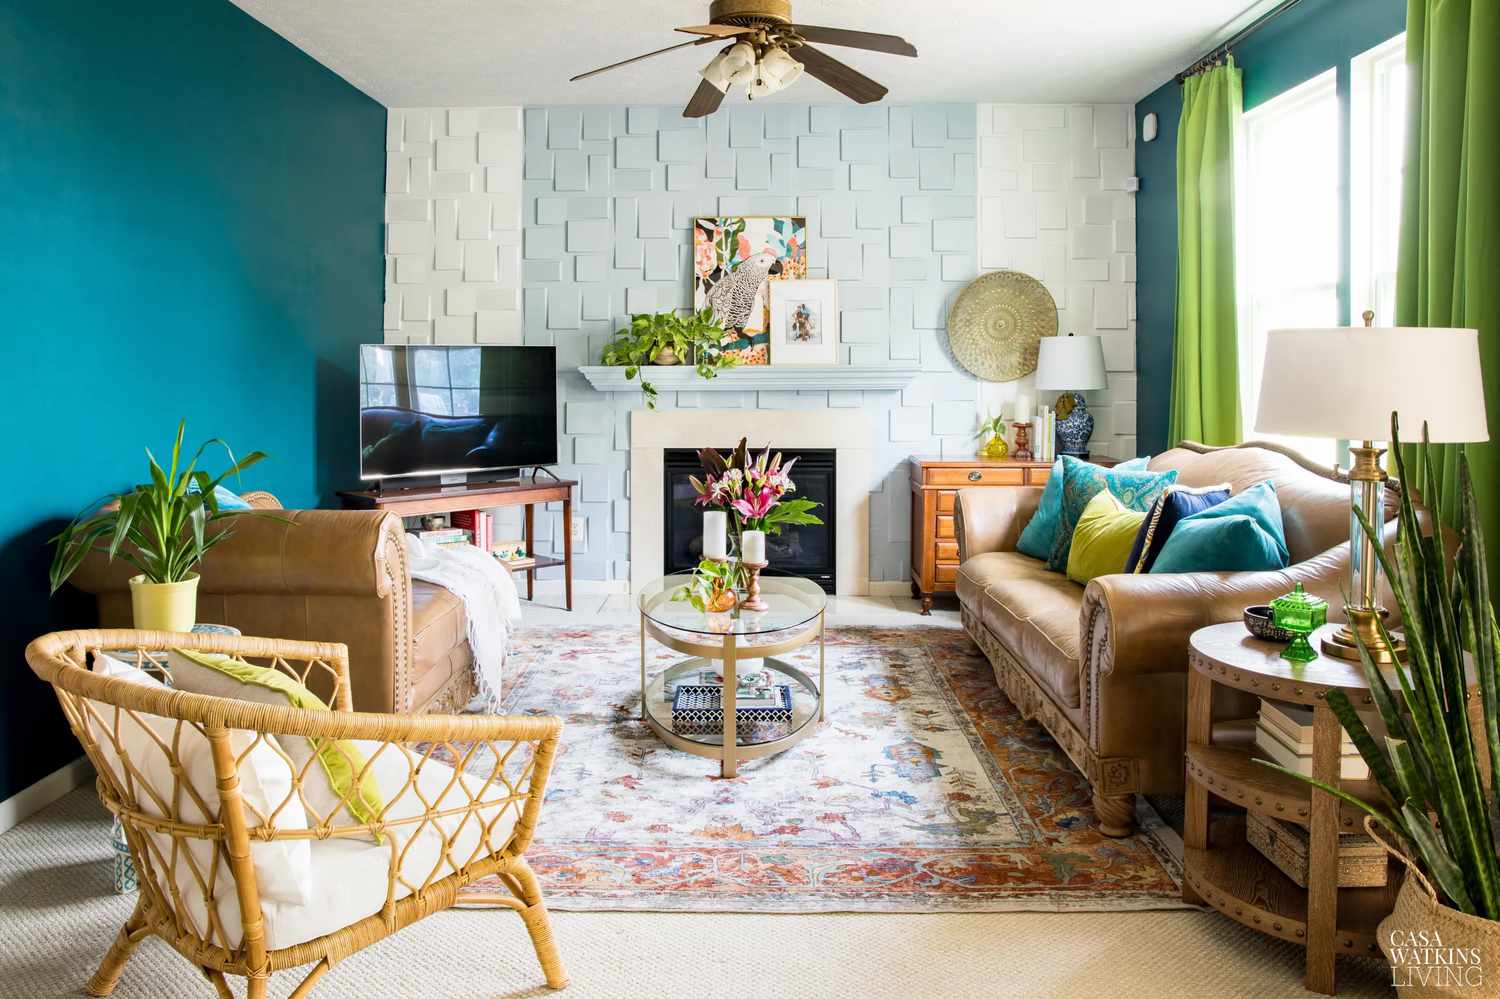 Parede da lareira azul-clara e paredes azul-petróleo ao redor em uma sala de estar aconchegante